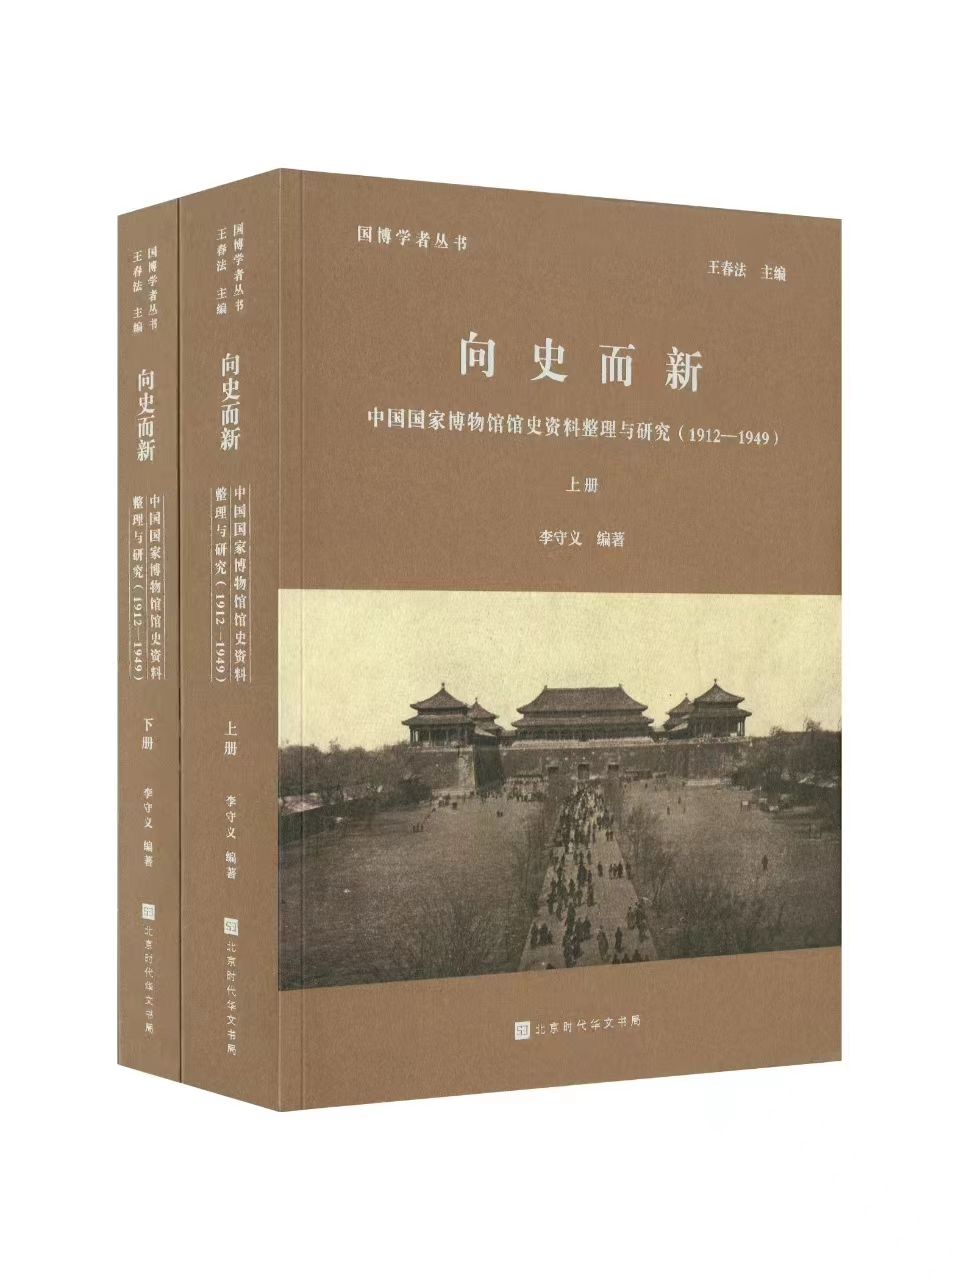 国博学者丛书 | 向史而新——中国国家博物馆馆史资料整理与研究（1912-1949）